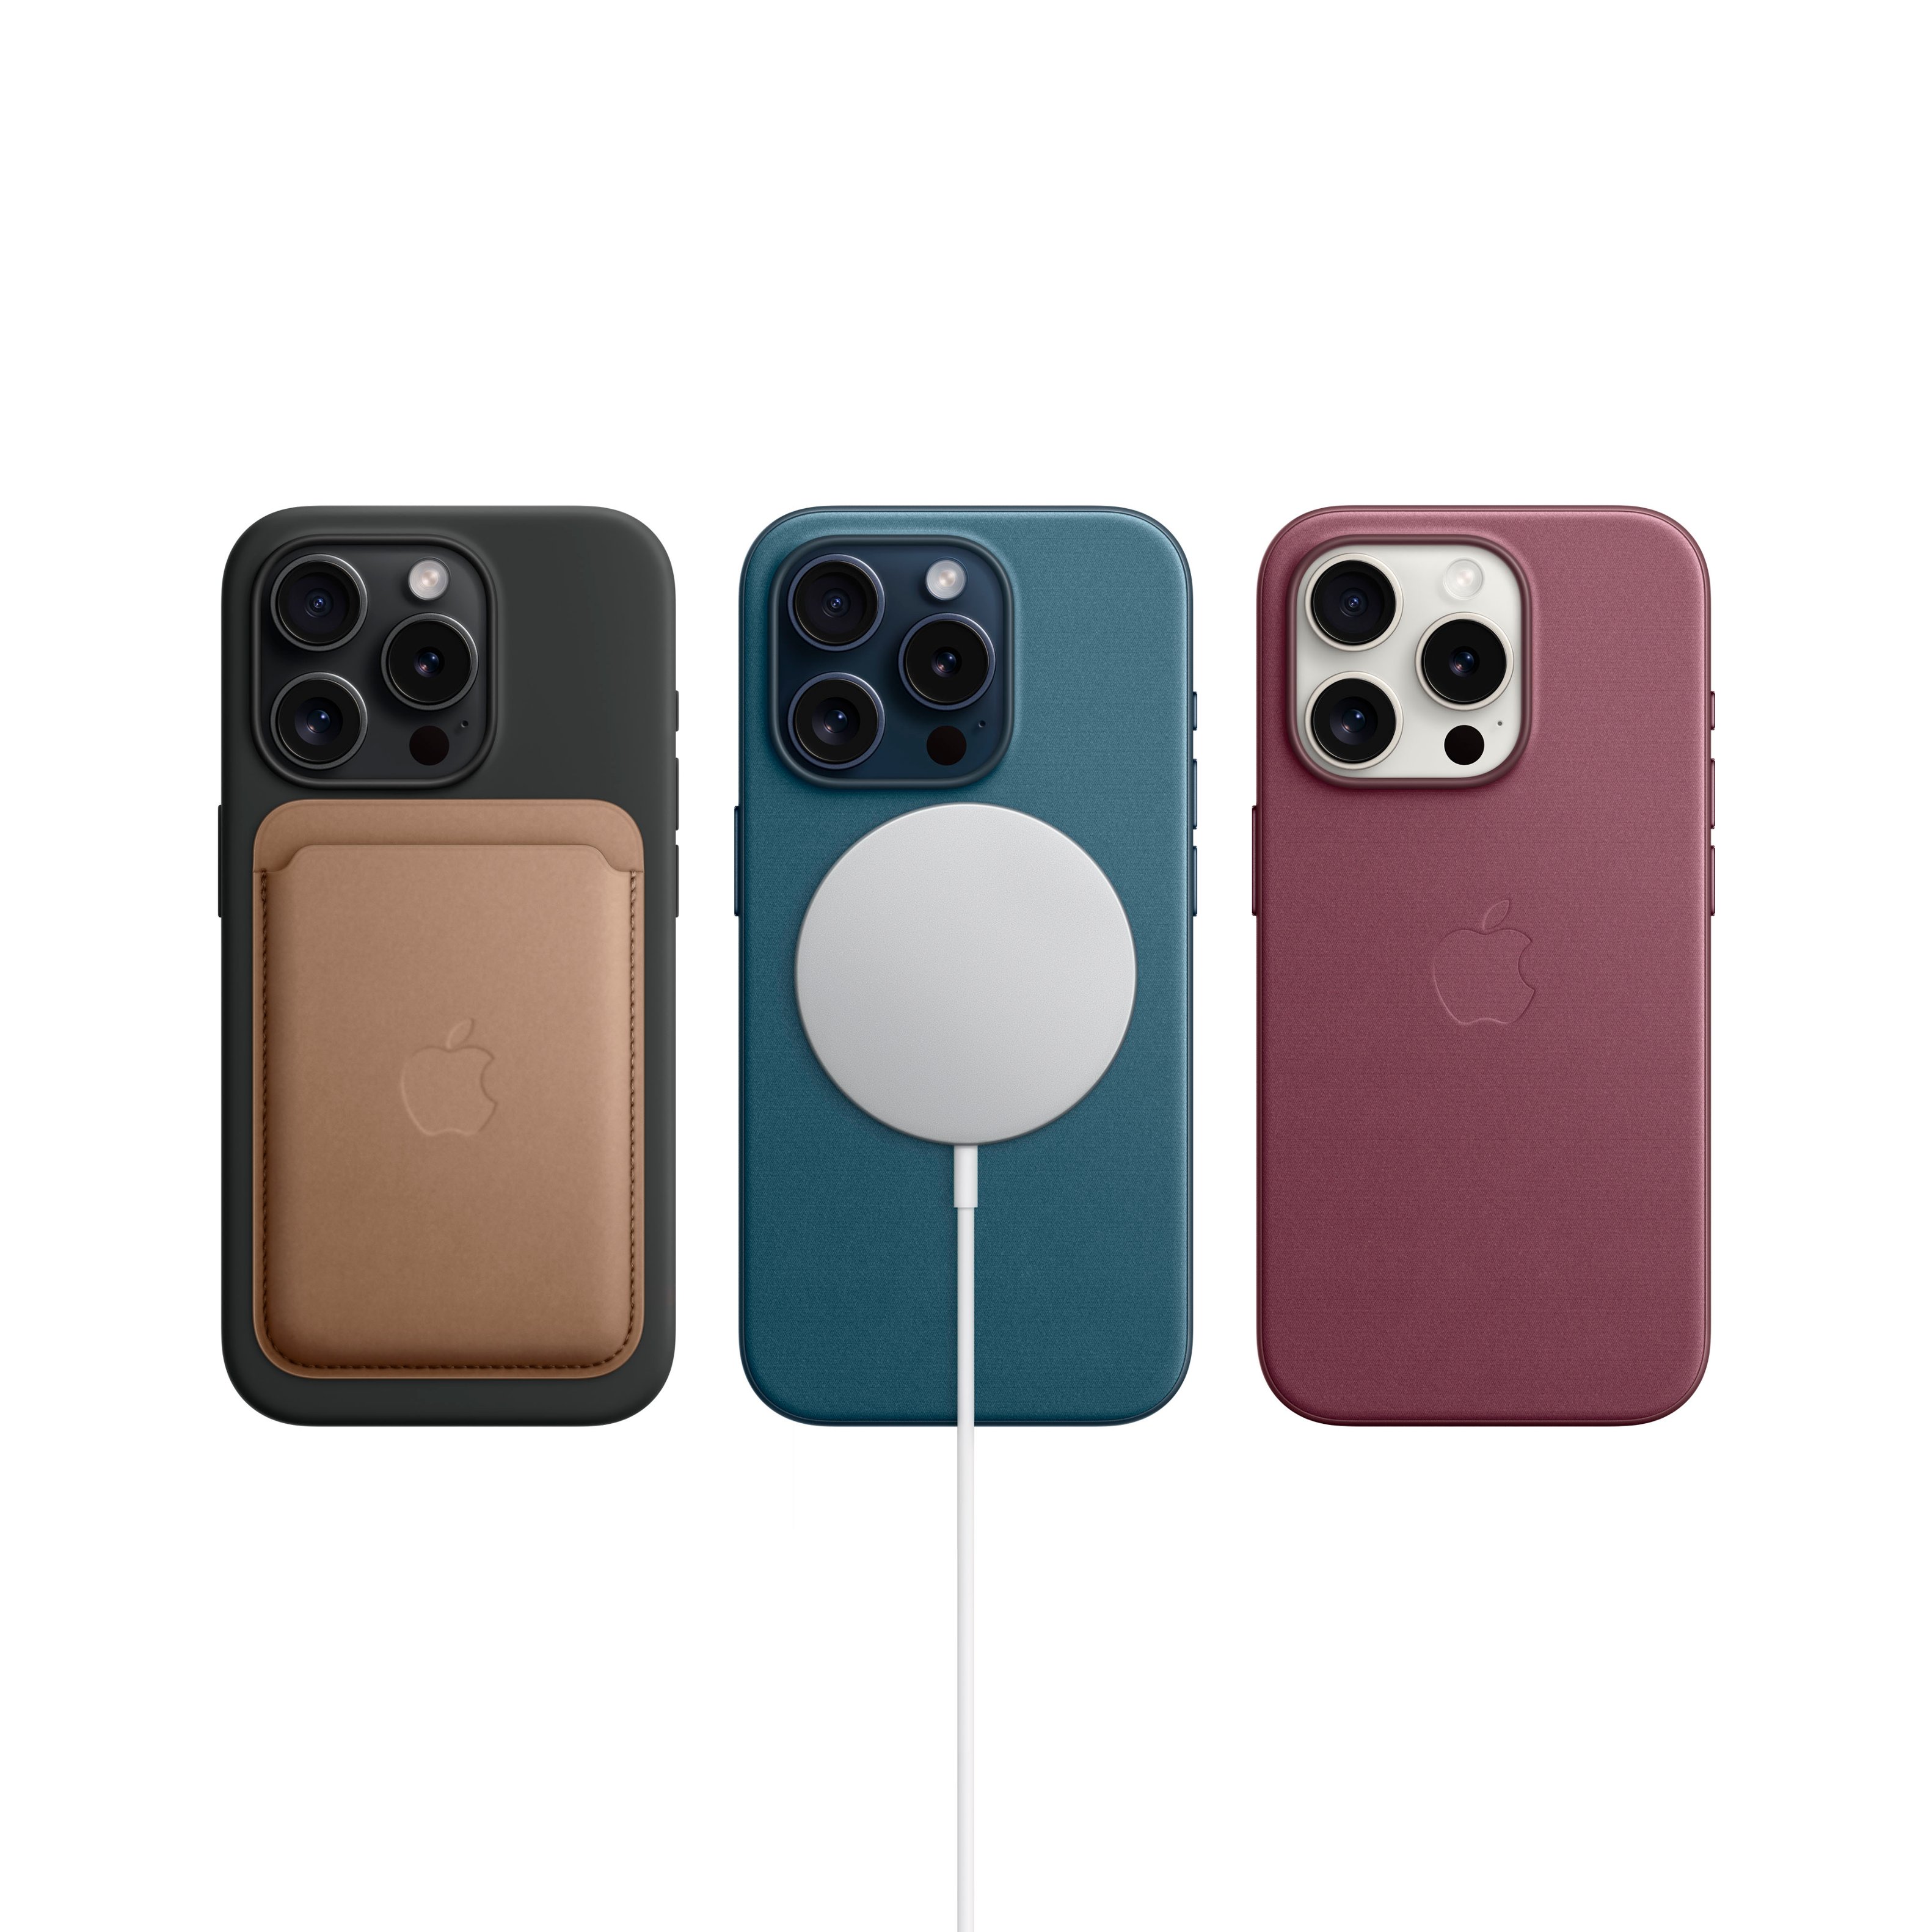 Apple iPhone 15 Pro Max - 256 GB - Blue Titanium - Unlocked